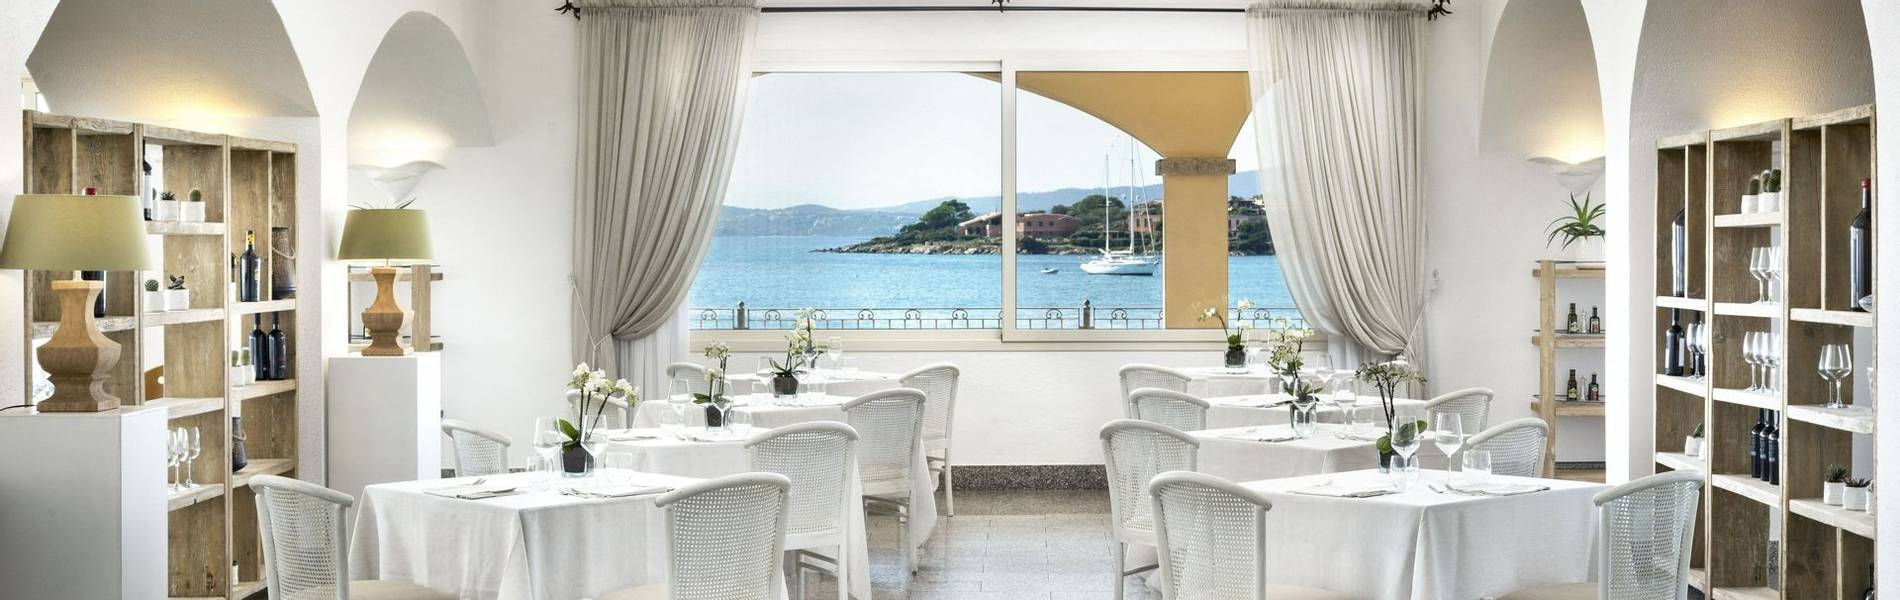 The White Restaurant - Gabbiano Azzurro Hotel _ Suites 2.jpg